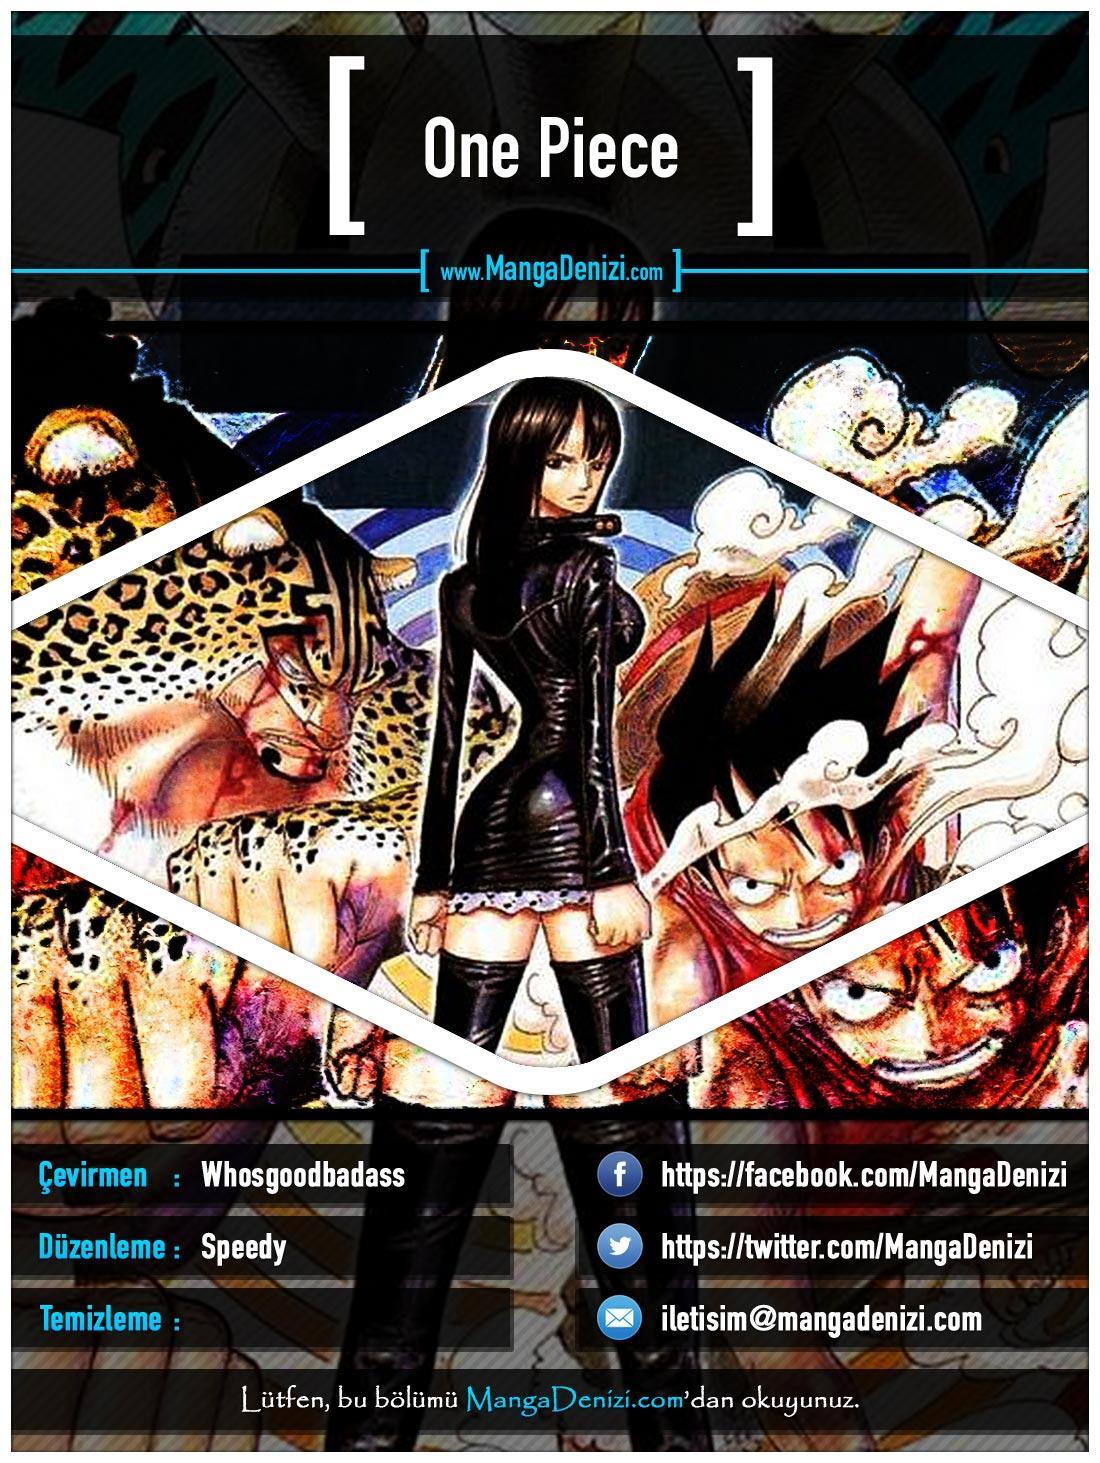 One Piece [Renkli] mangasının 0390 bölümünün 1. sayfasını okuyorsunuz.